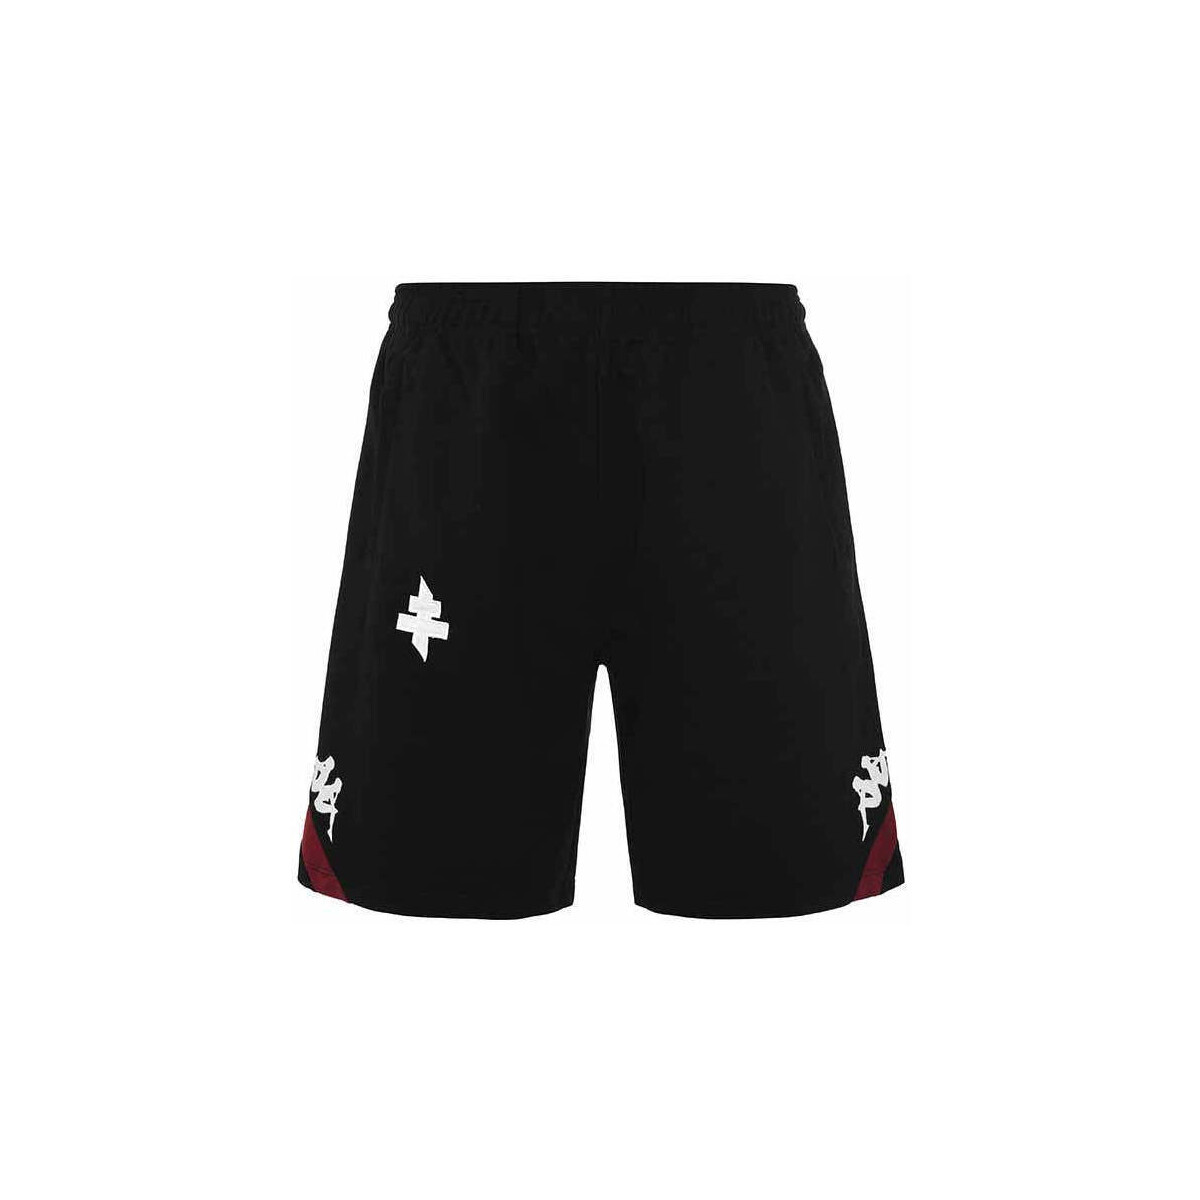 Vêtements Garçon Shorts / Bermudas Kappa Short Alozip 6 FC Metz 22/23 Noir